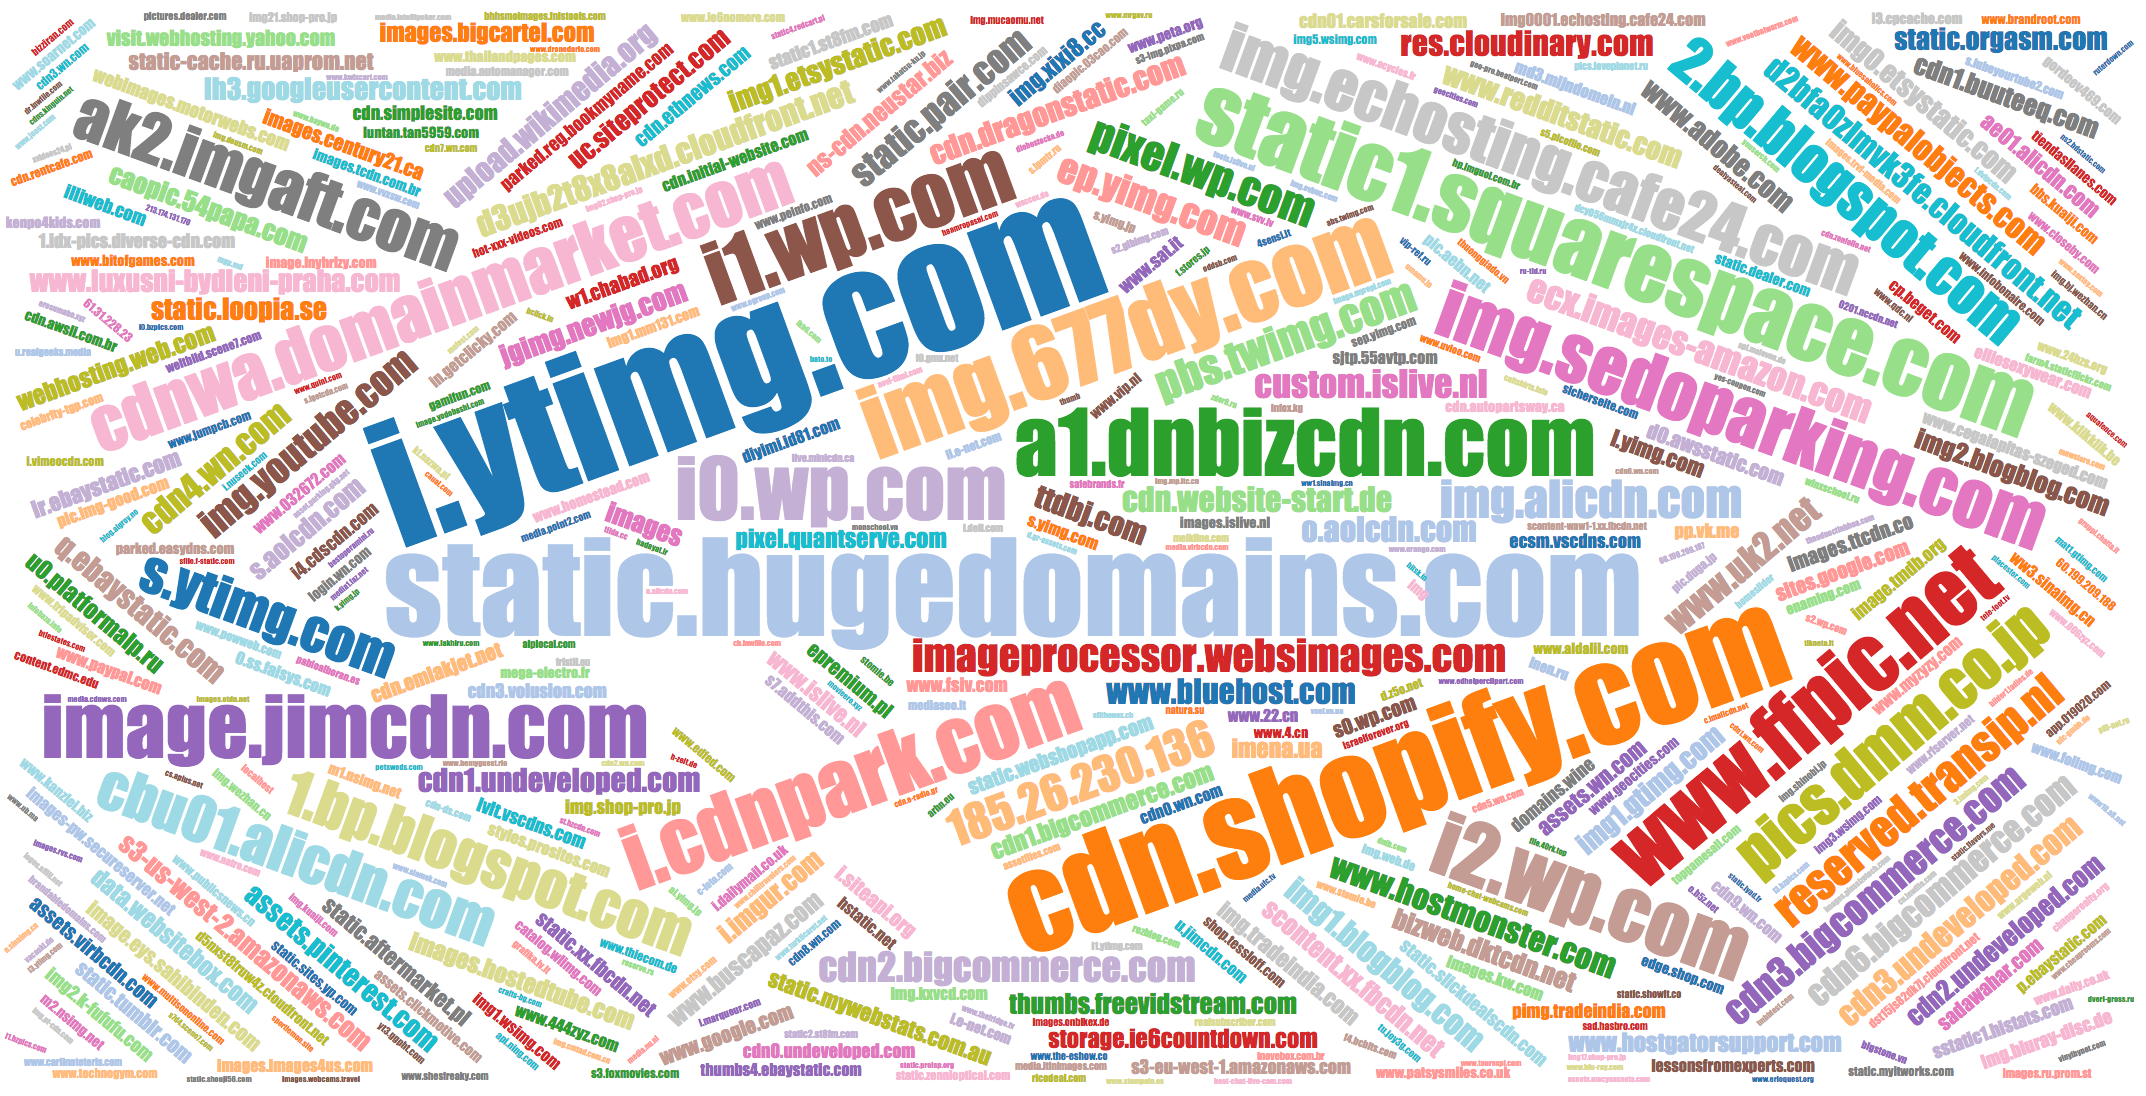 Popular names of IMG domains jgimg.newjg.com, jsprun.tan5959.com, etc.